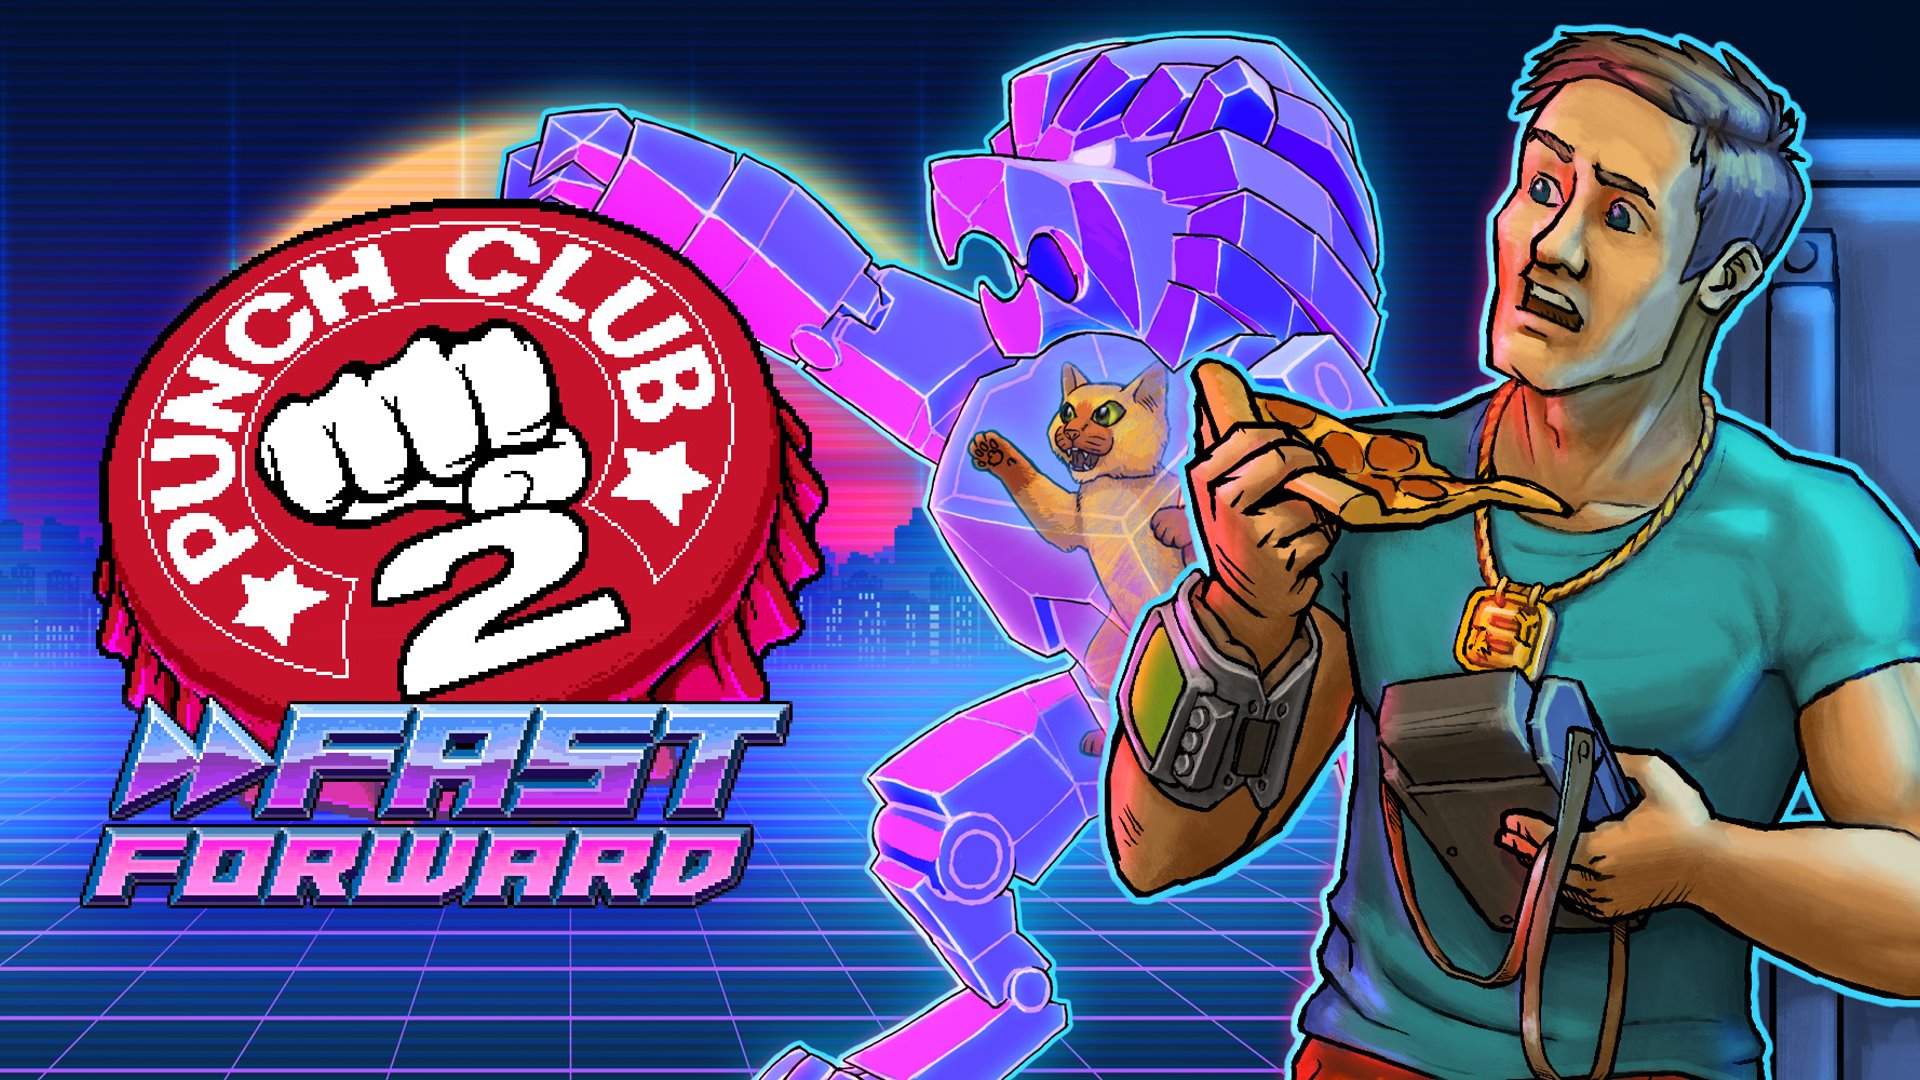 portada de Punch Club 2: Fast Forward